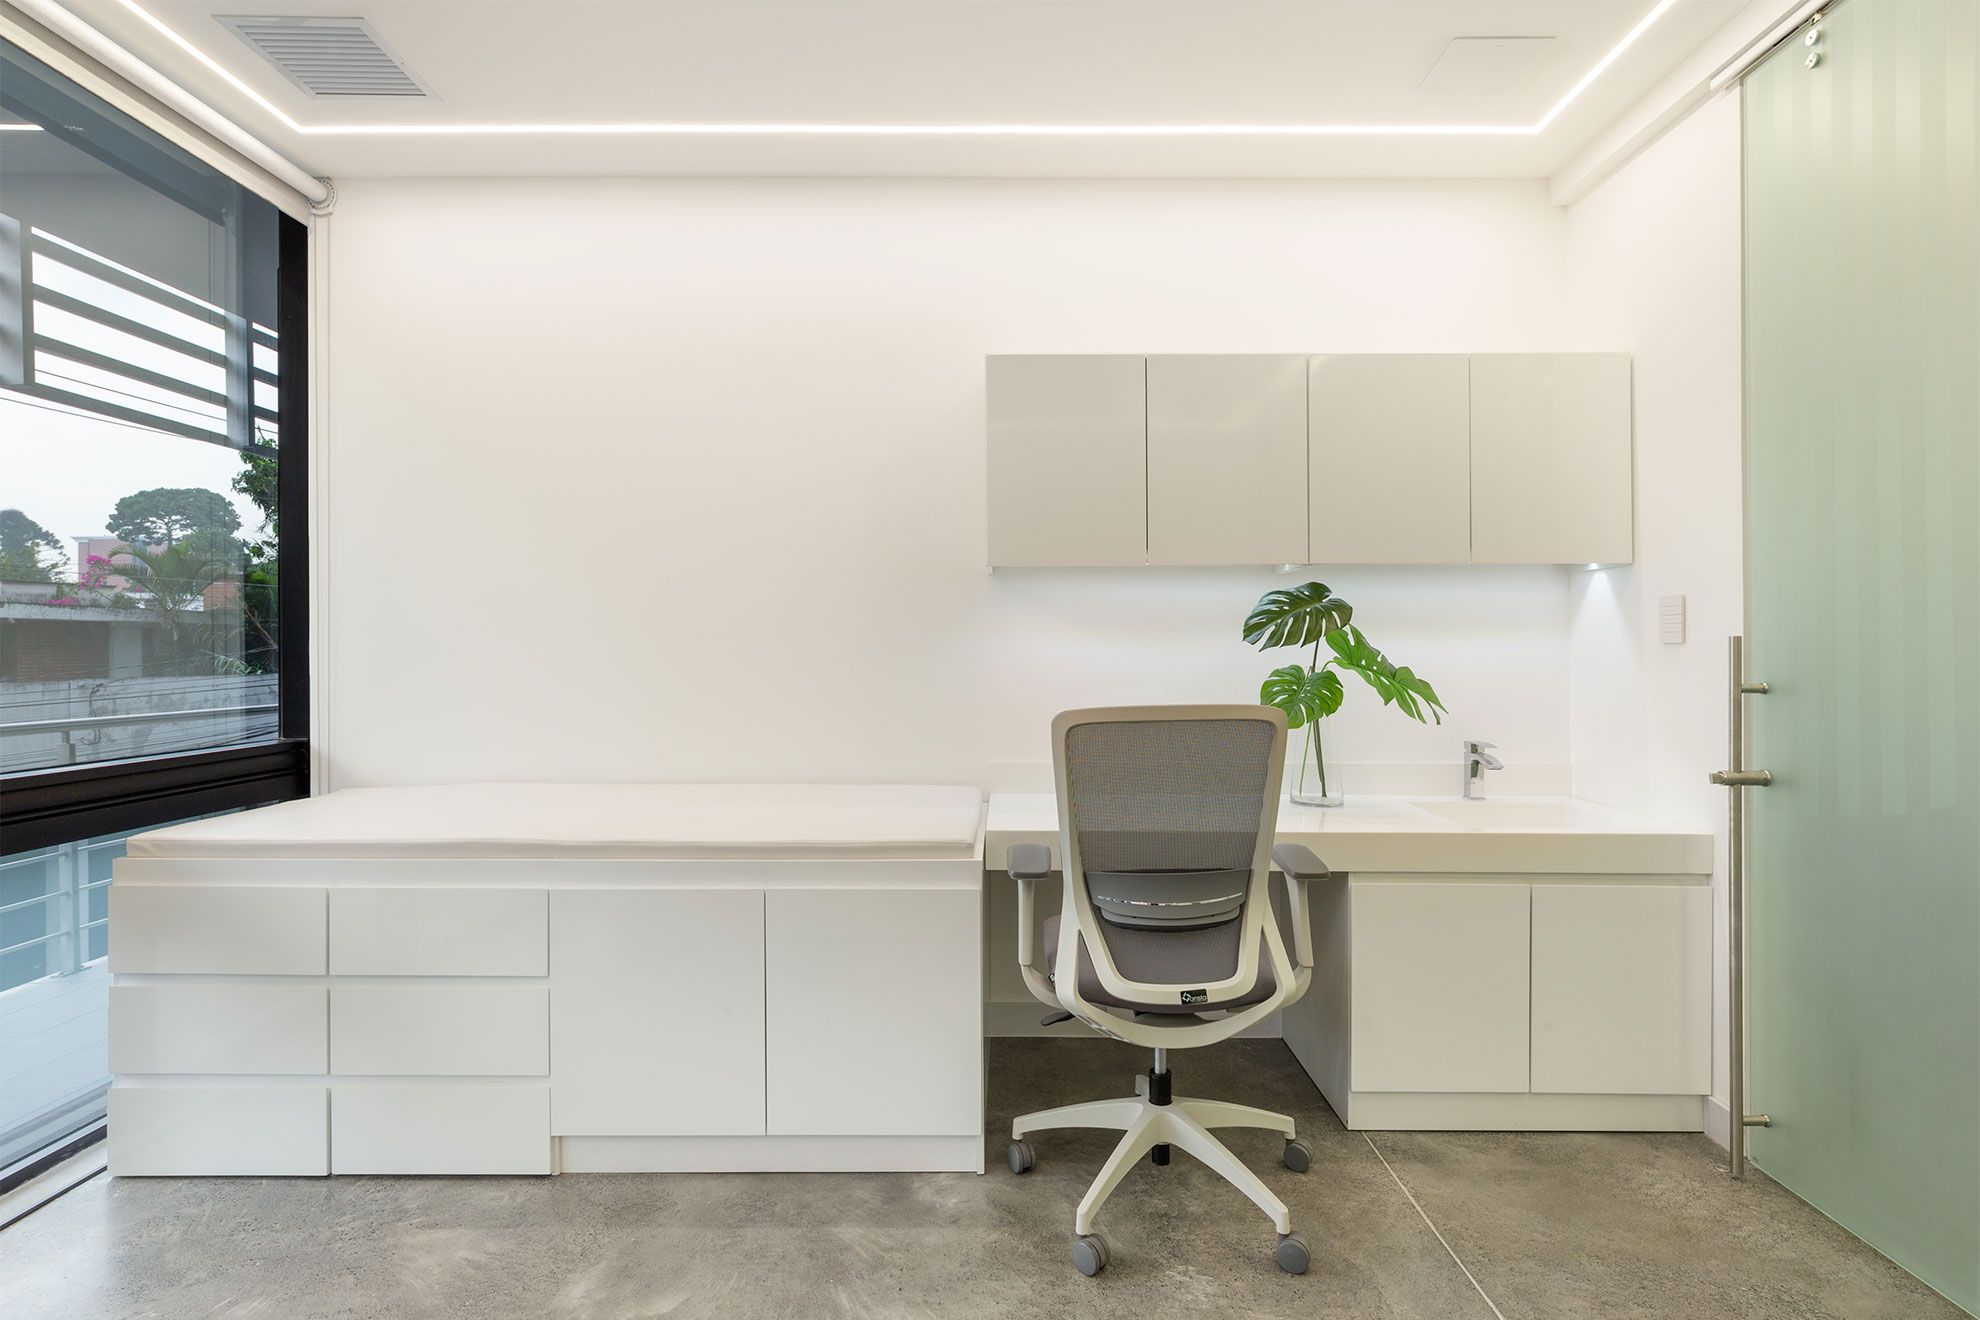 La importancia de la luz natural en una oficina o clínica